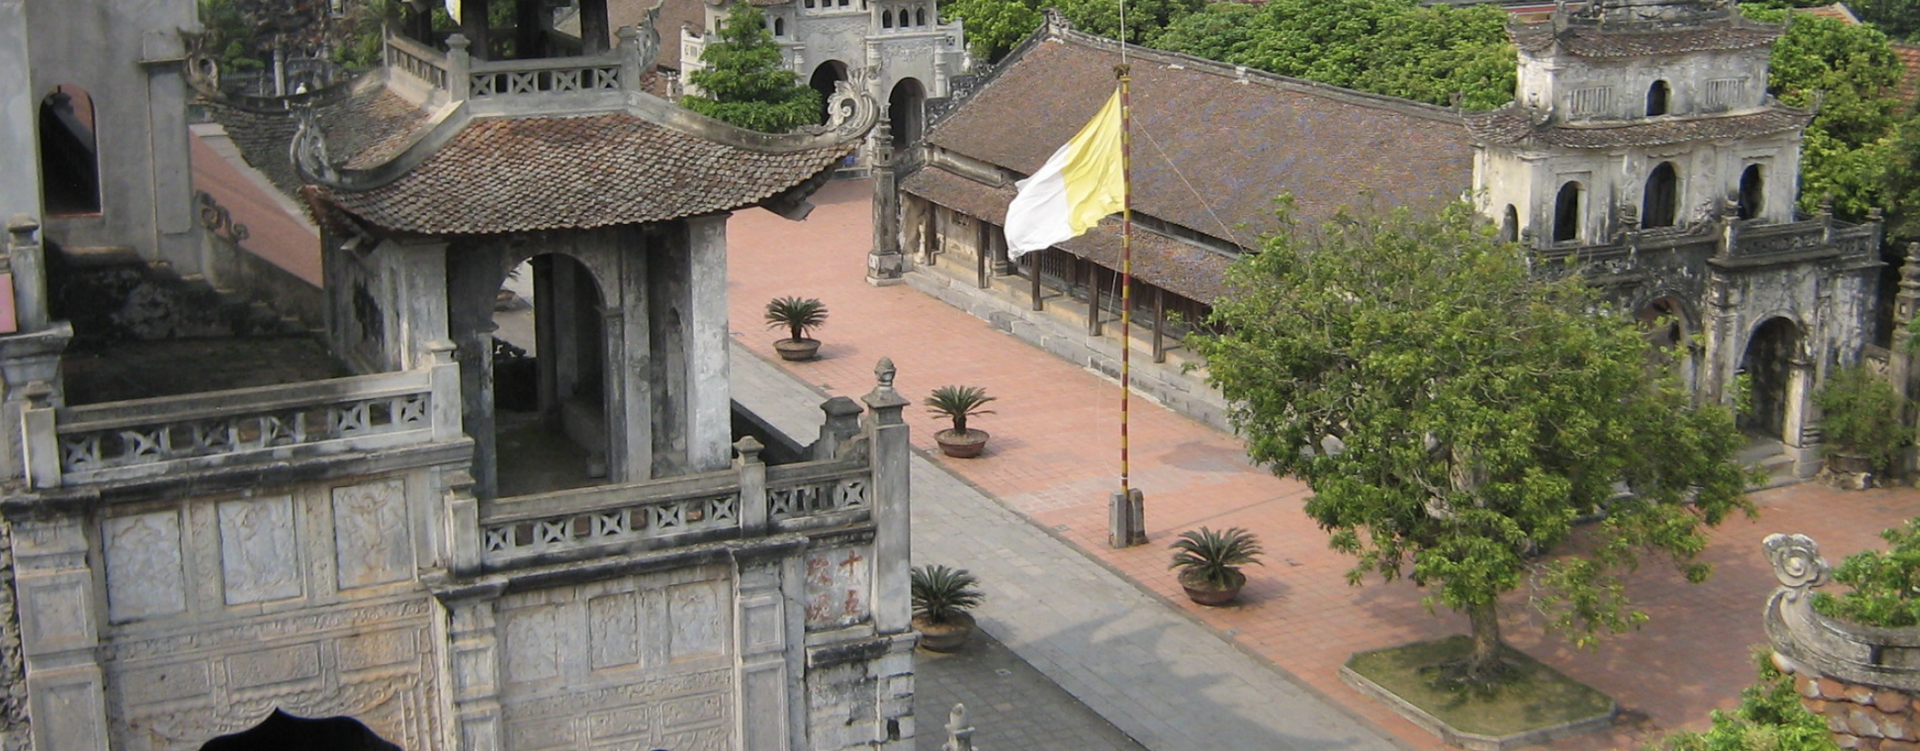 Un drapeau du Vatican flotte près de la cathédrale de Phat Diem, au nord du Vietnam | © Flickr/Jeannie Zakharov/CC BY-NC-ND 2.0